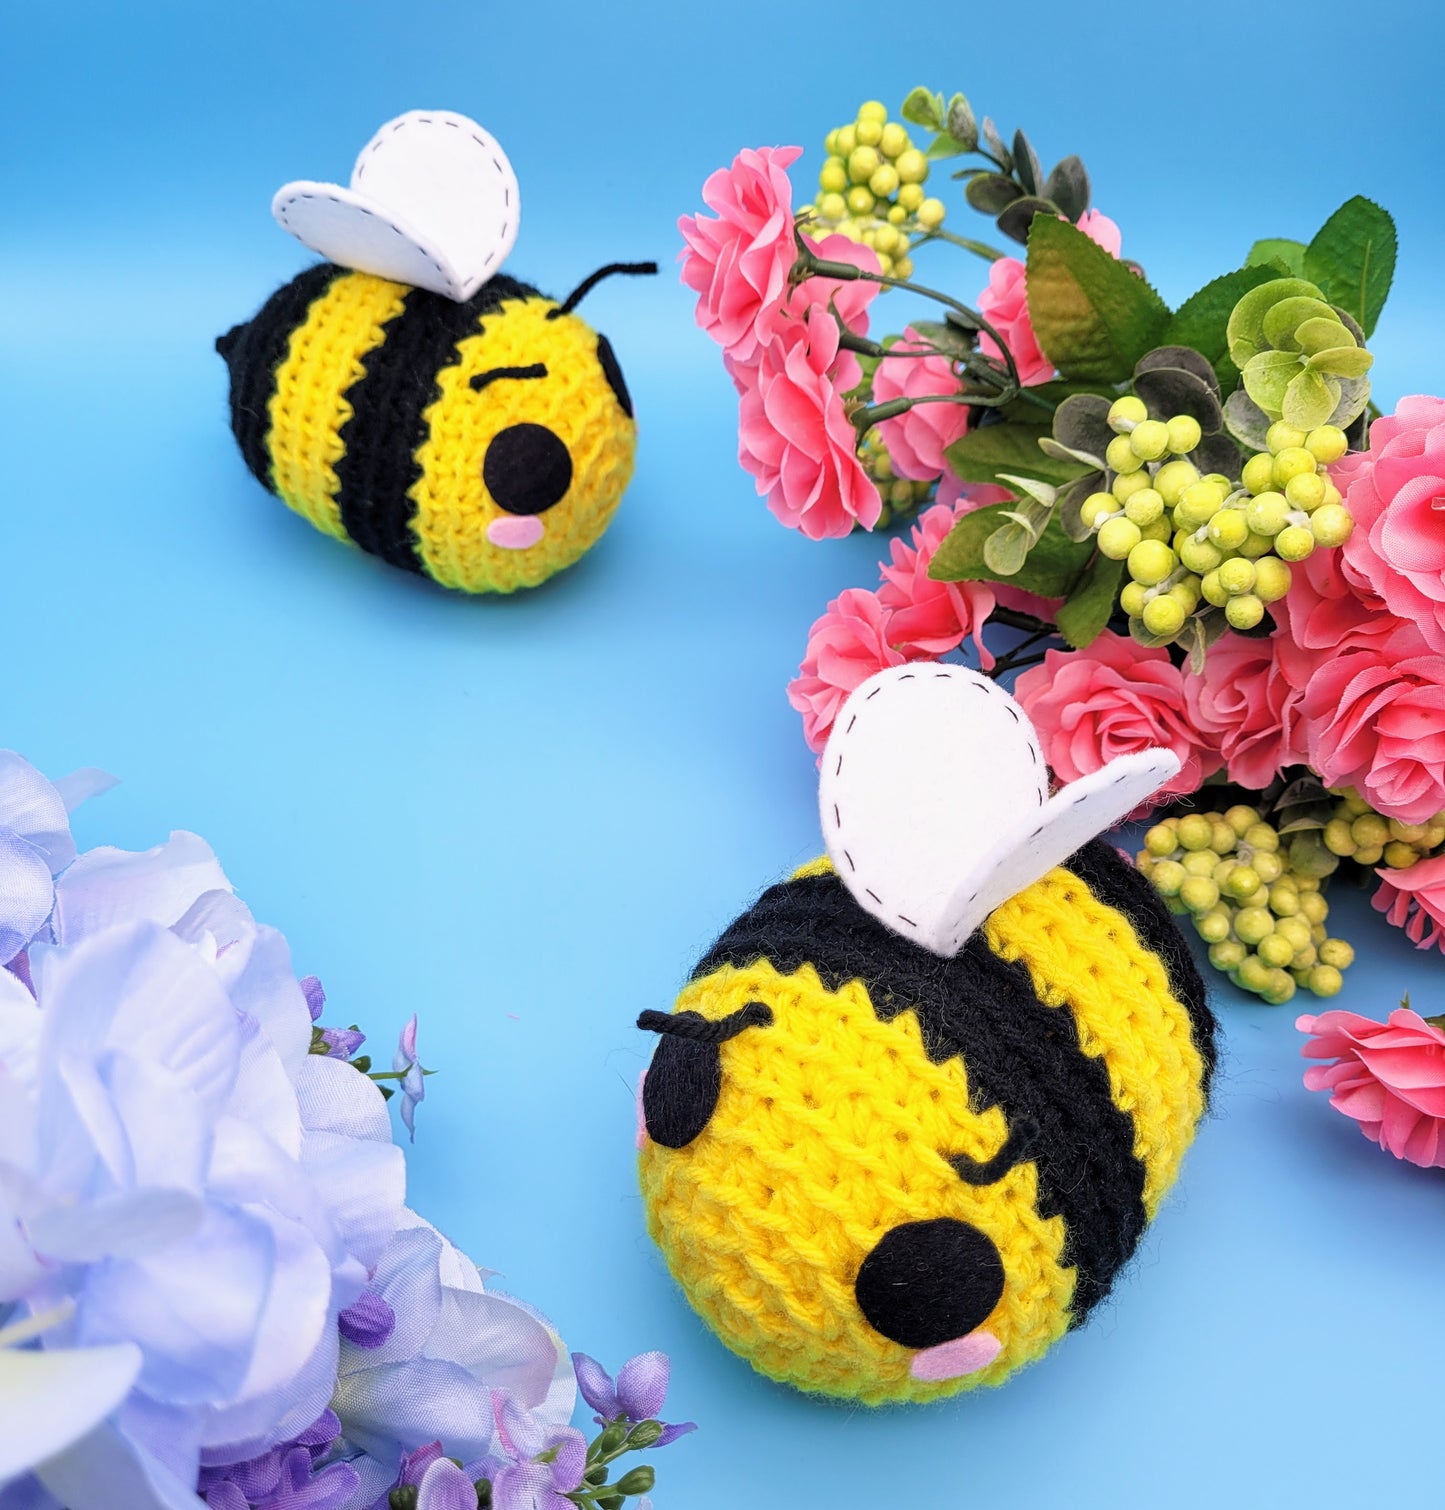 Bumble Bee Plush